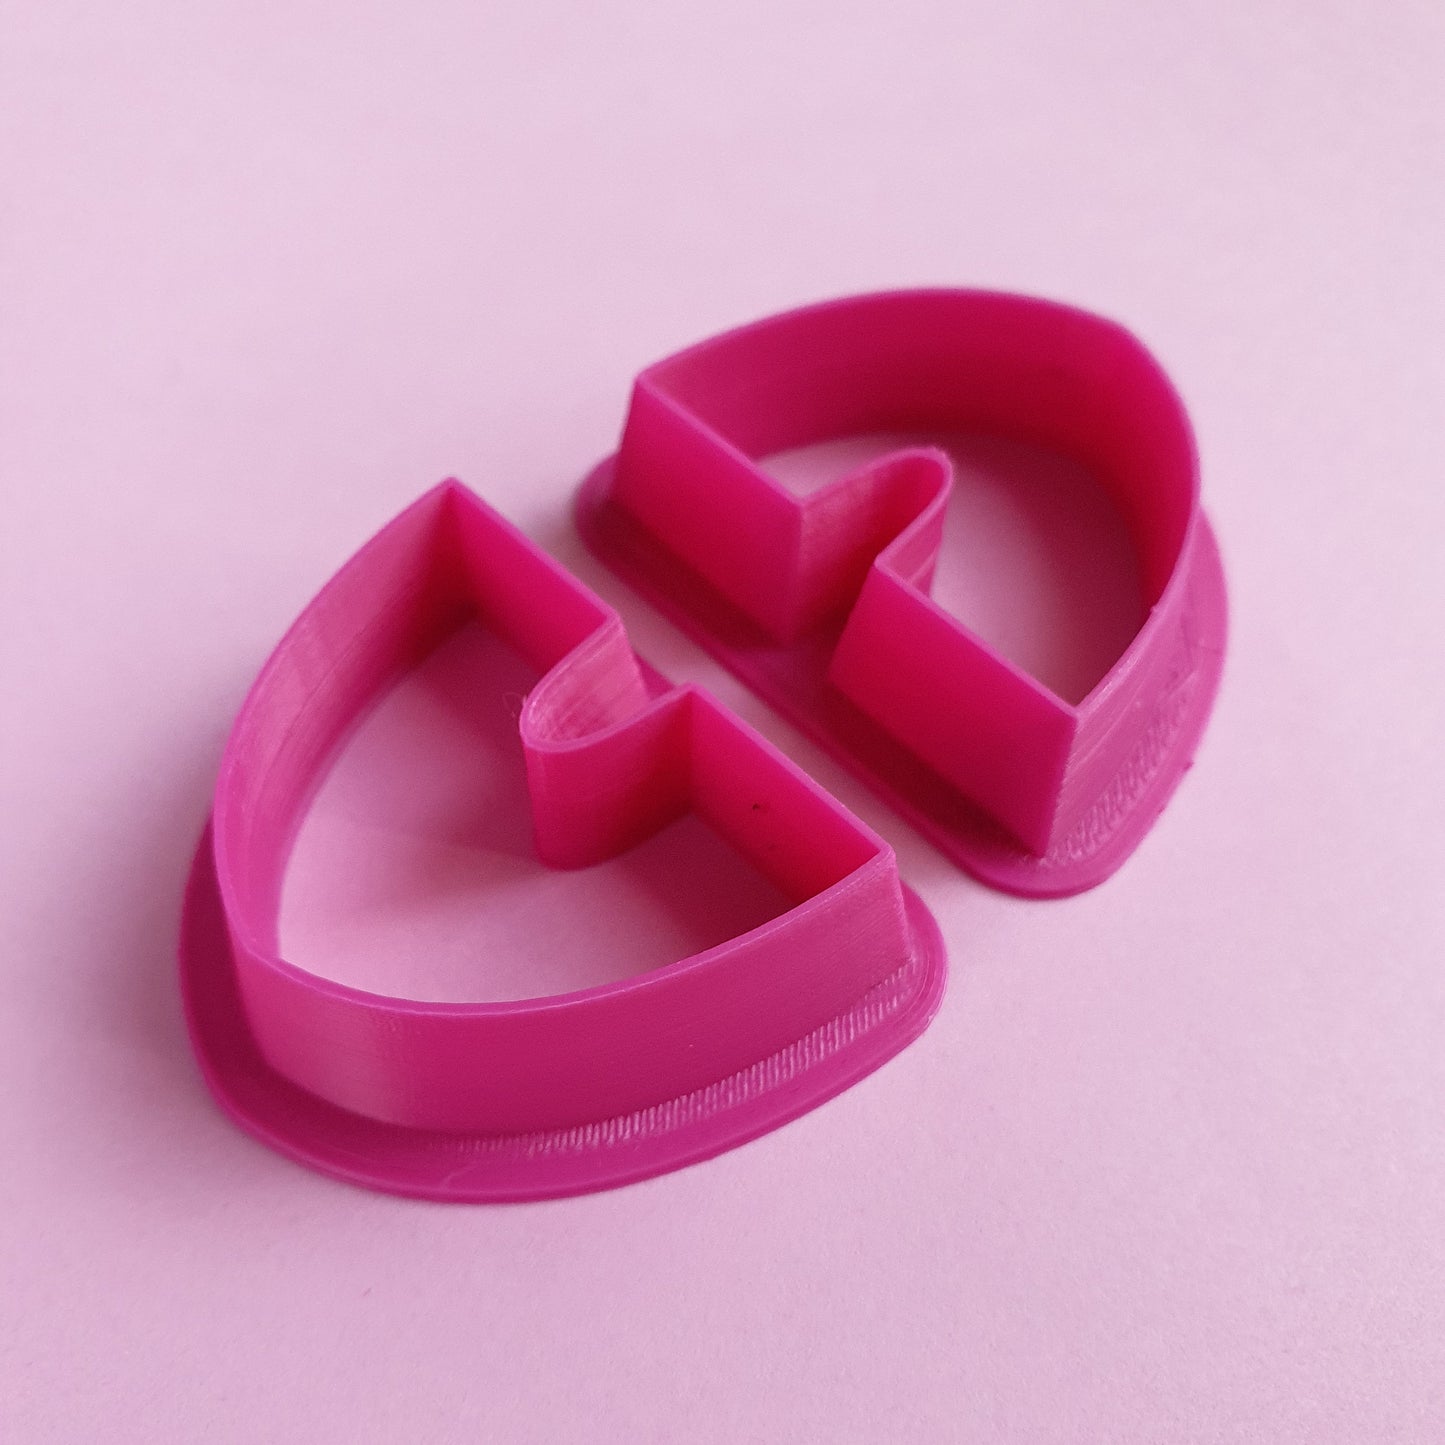 Earrings Polymer clay 3D cutters "Arch" Geometry Jewelry shape cutter